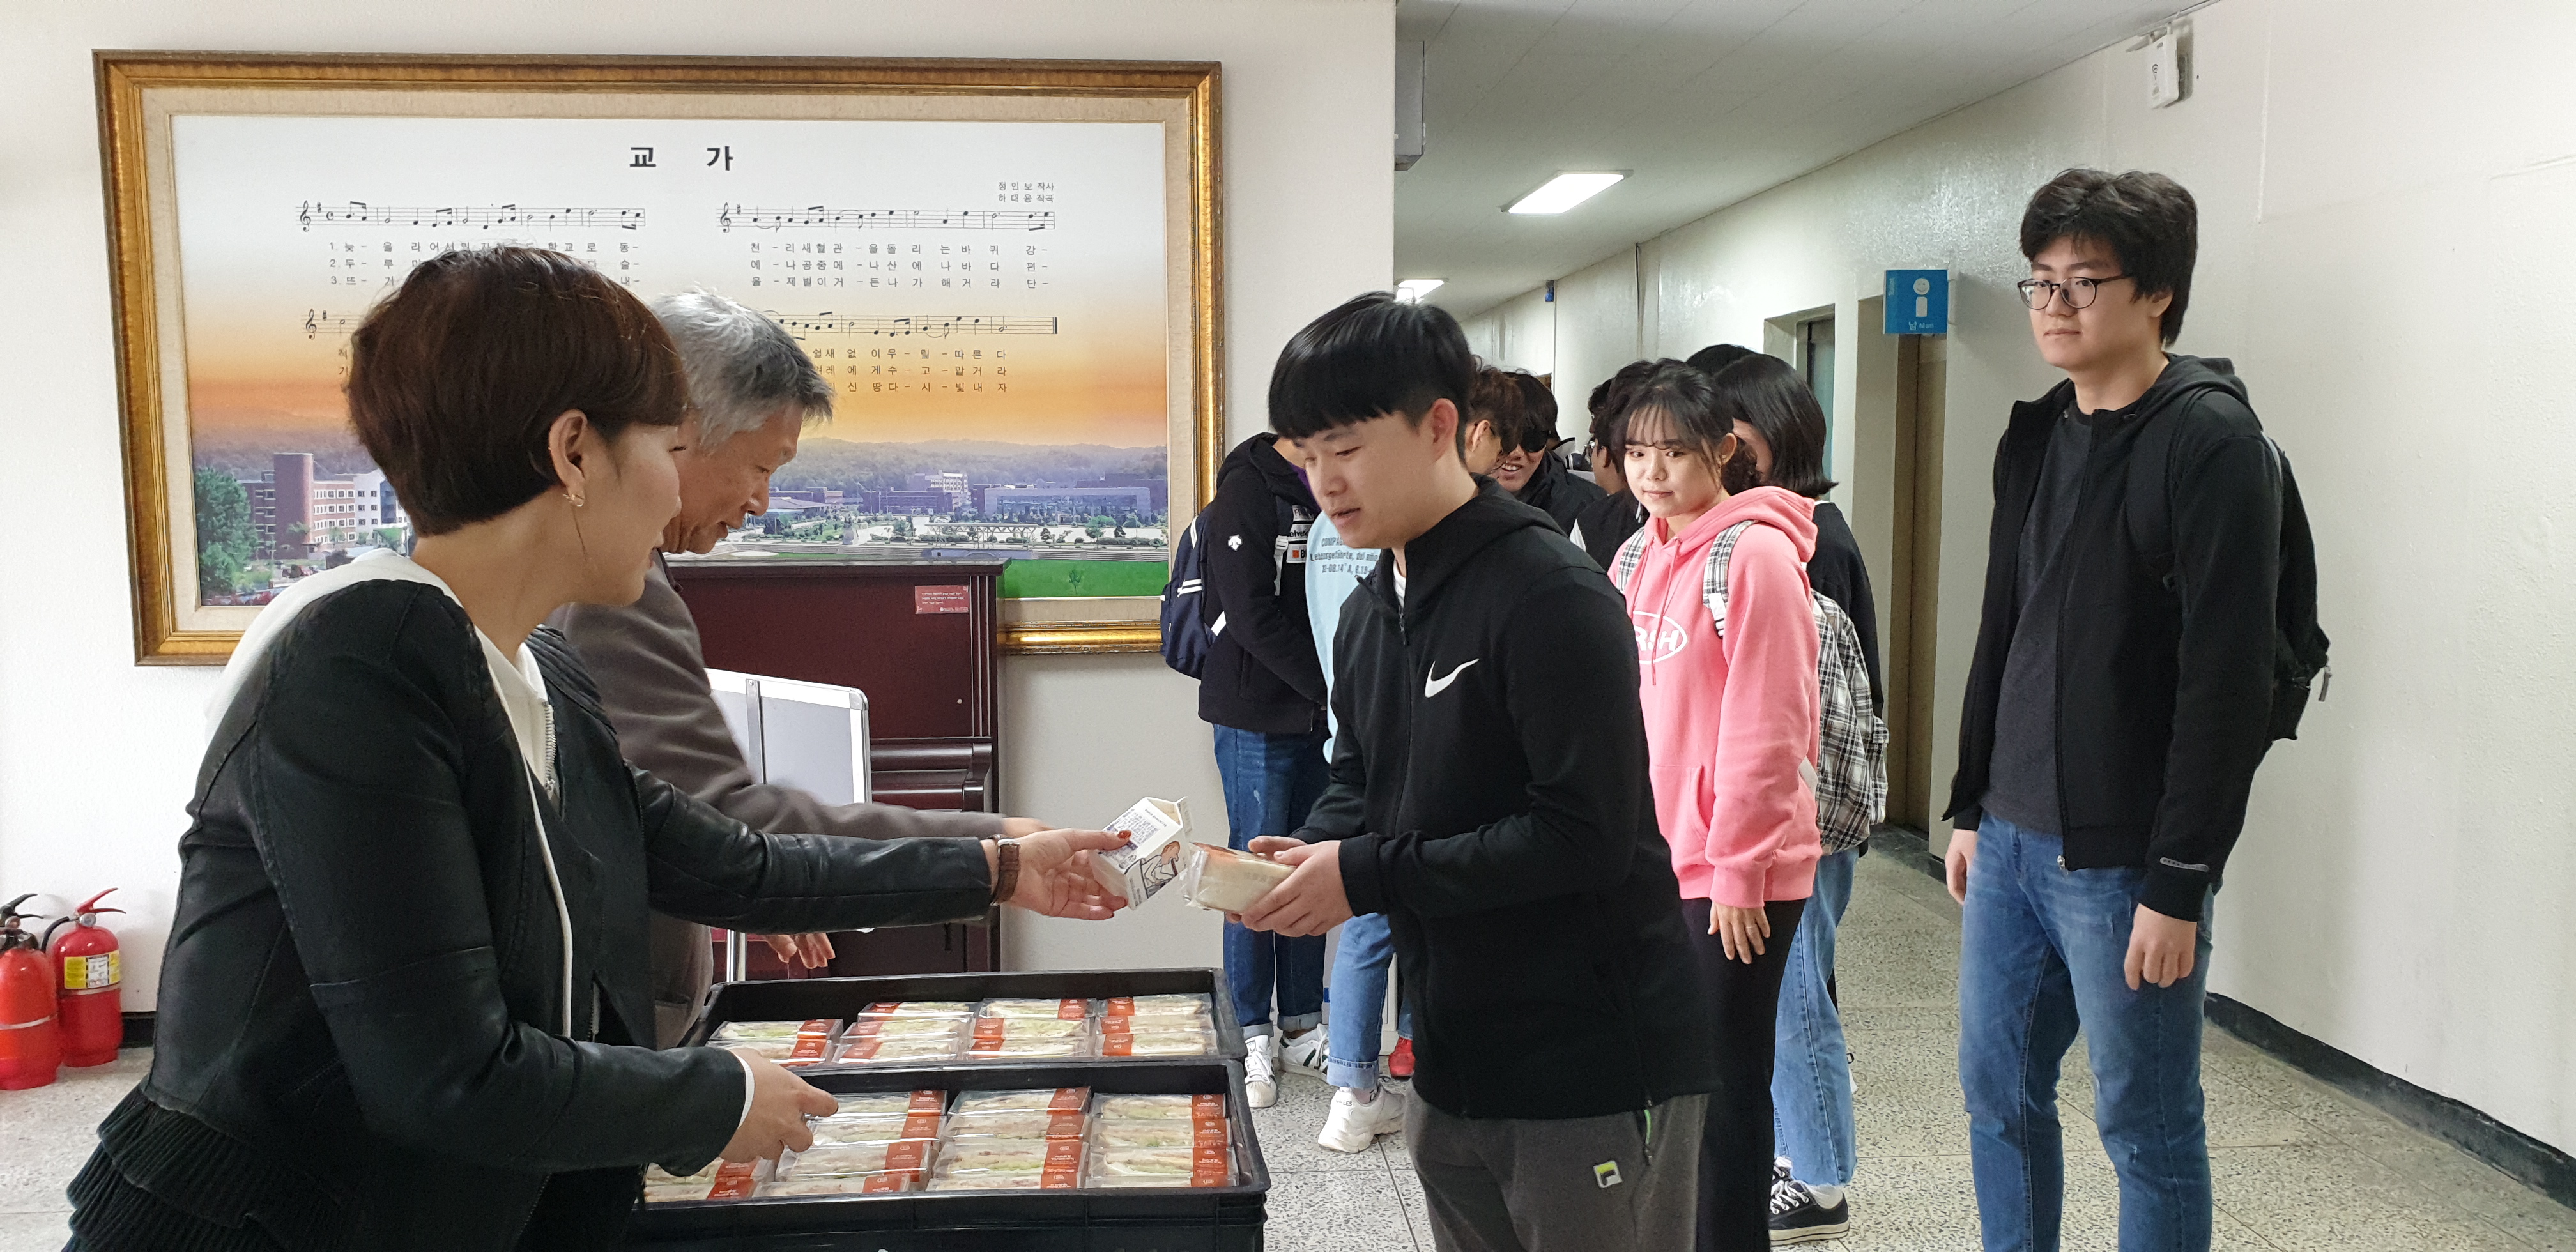 2019-2학기 중간고사 Student First 간식 전달 이벤트 (2019. 10. 23.)